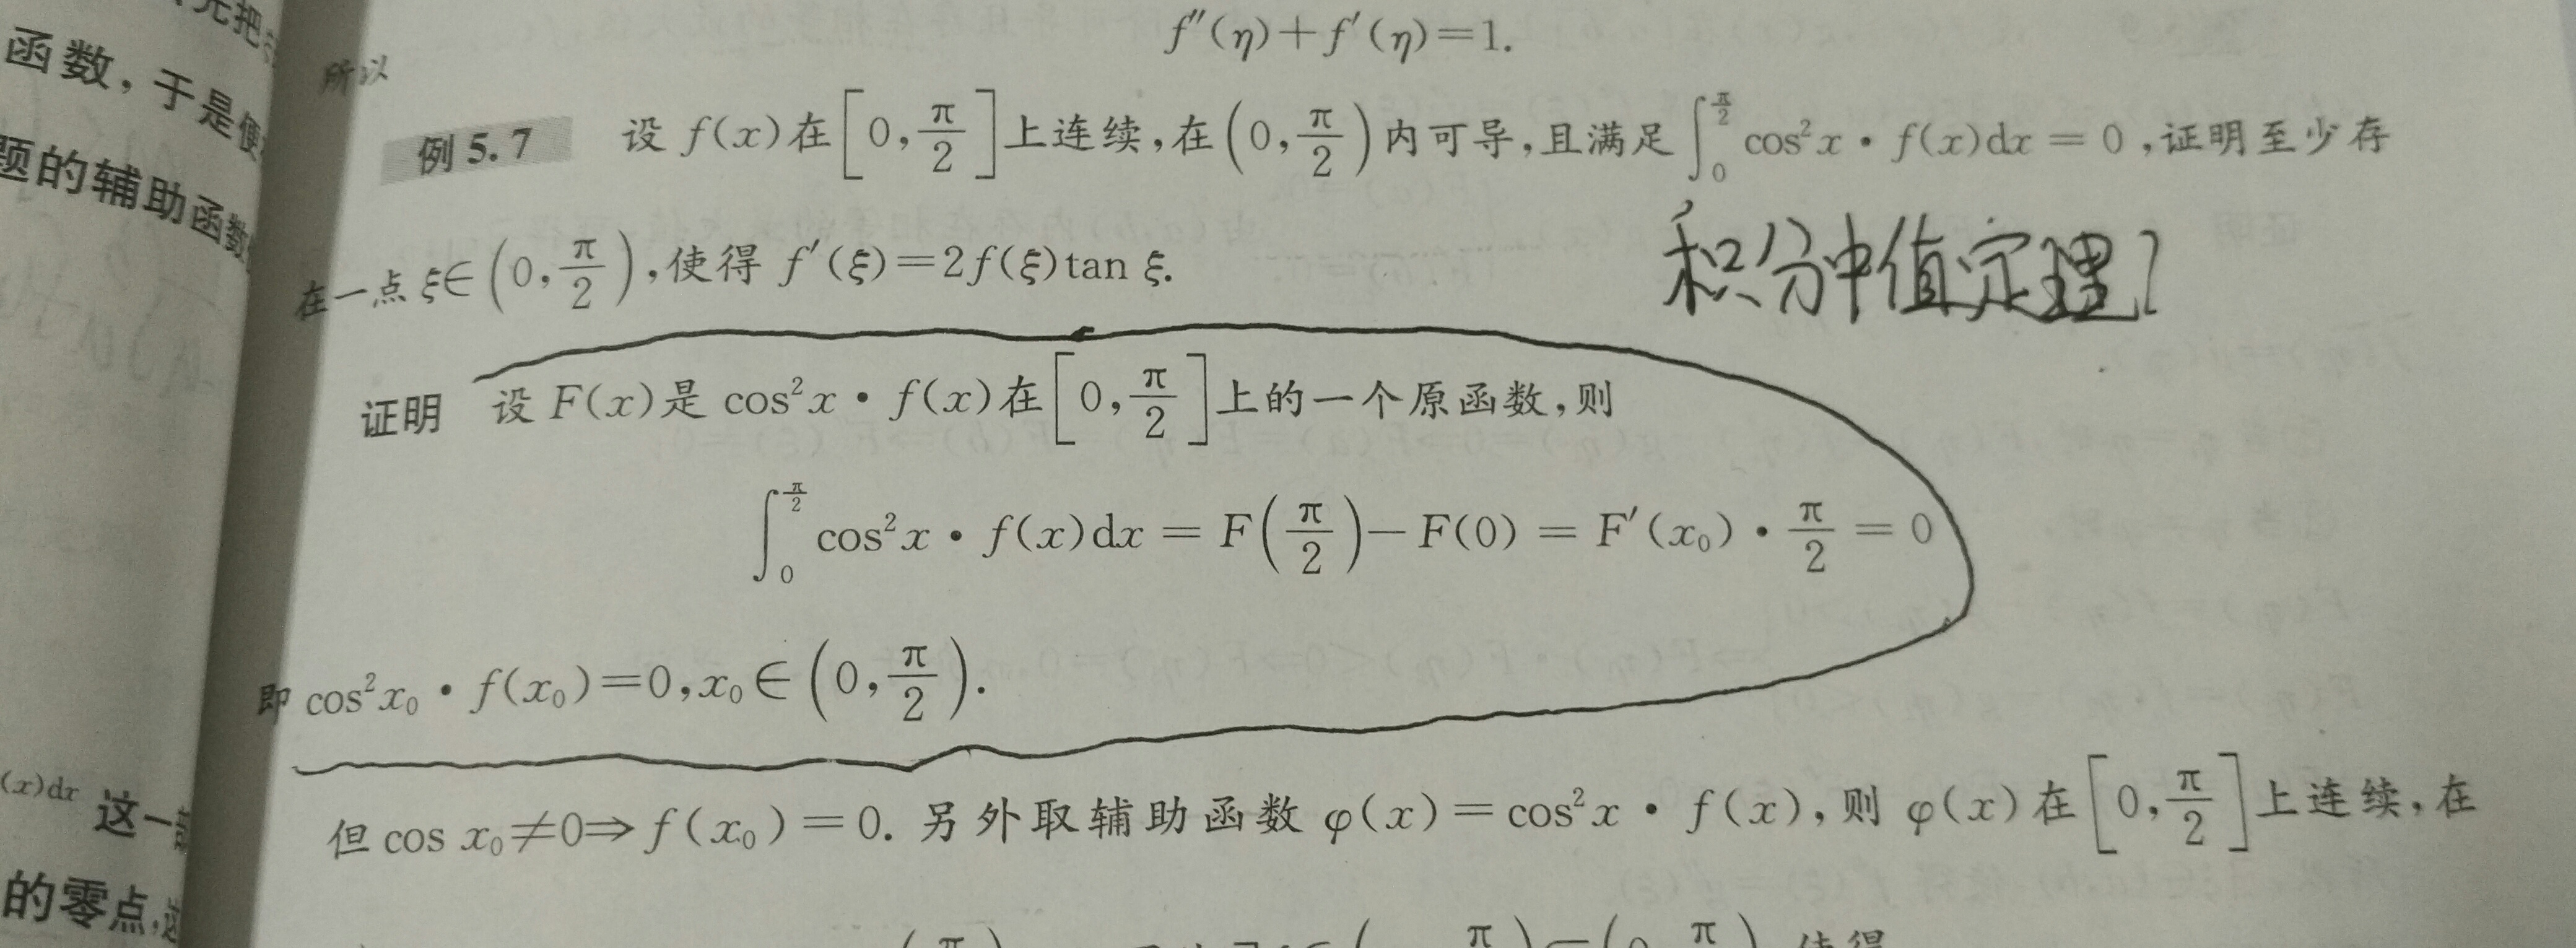 老师您好,这部分的证明结果和积分中值定理很相似,只是把x0的取值范围